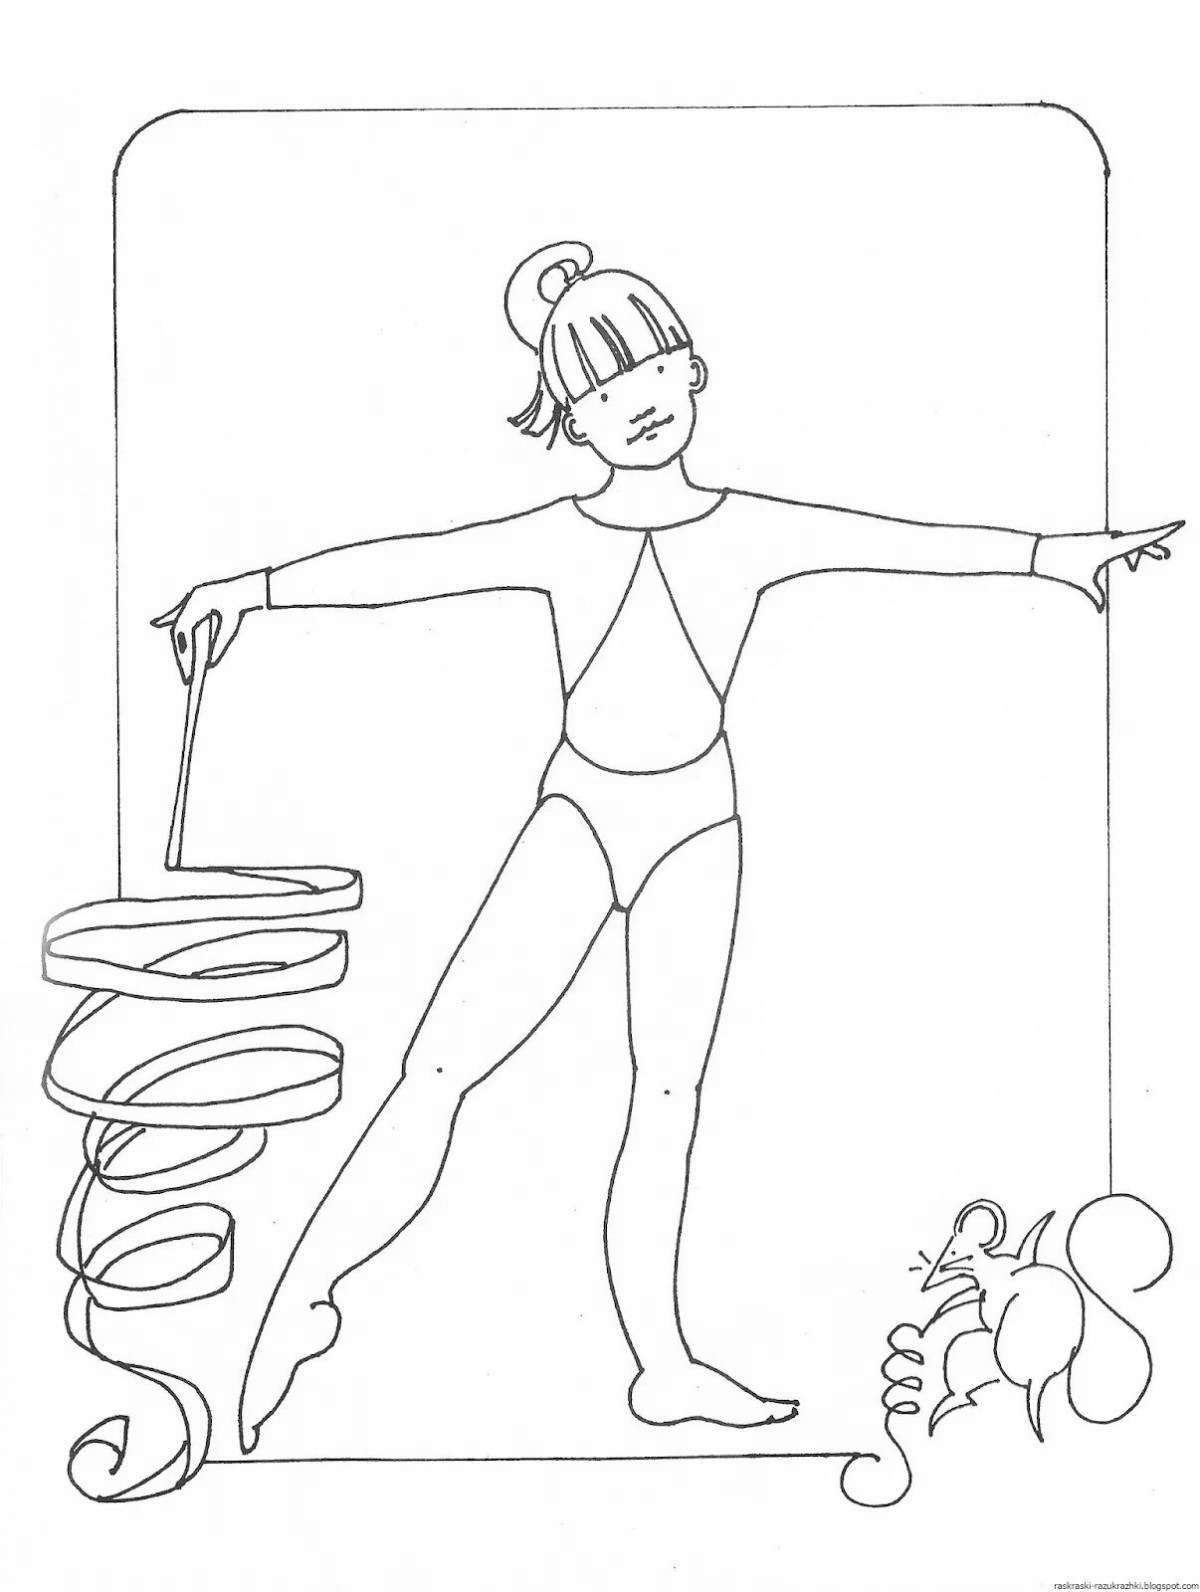 Animated preschool gymnastics coloring book